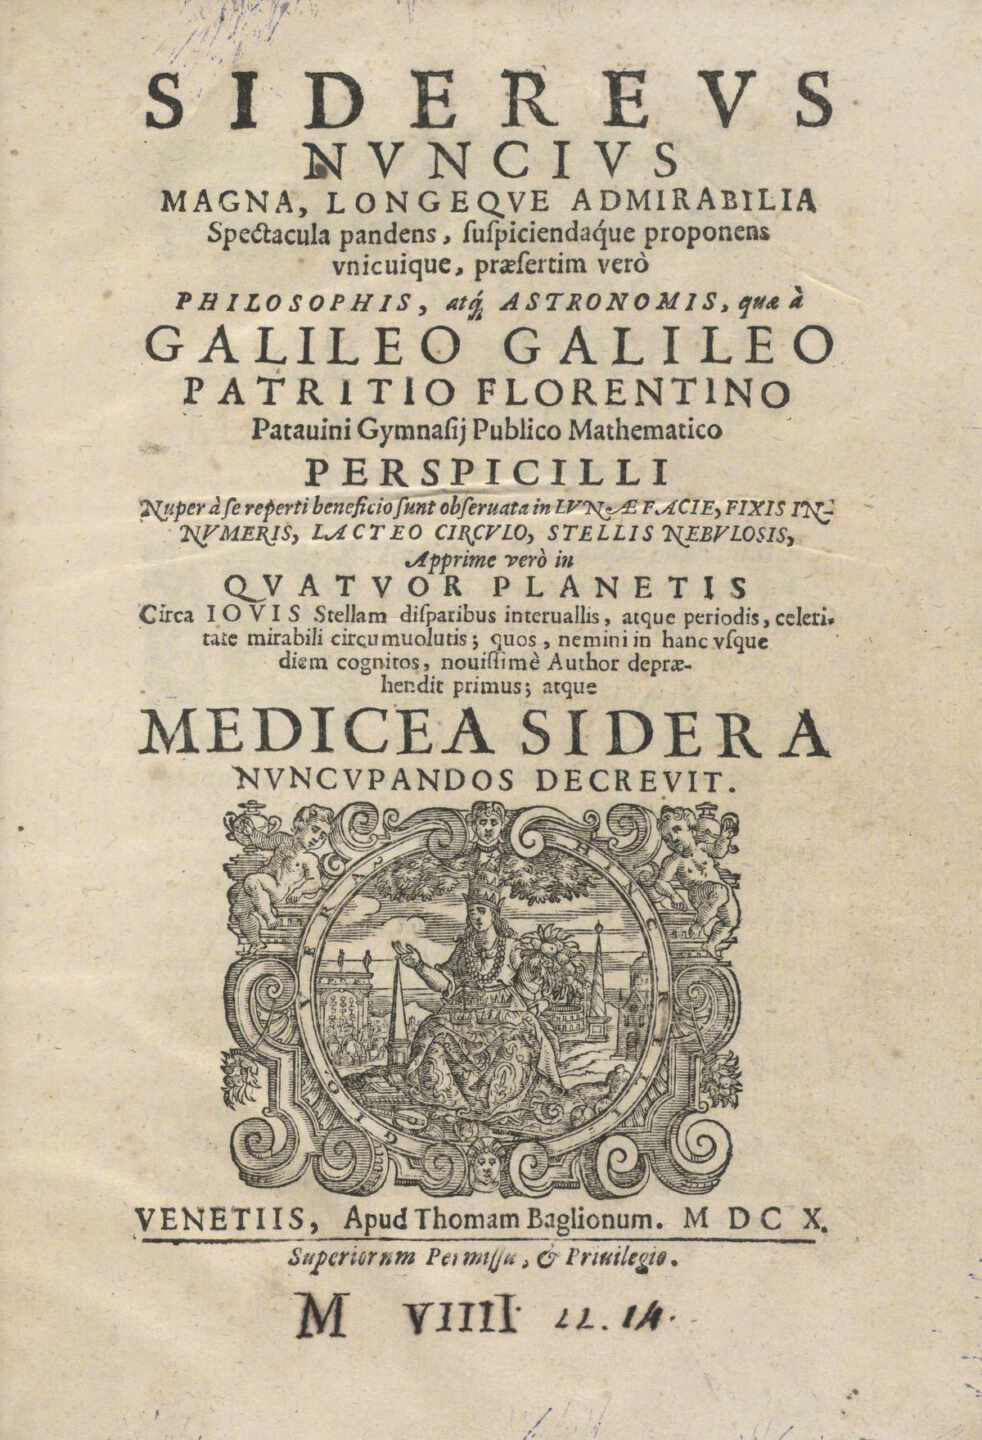 Cultura y la Biblioteca Nacional se reúnen por el robo de la obra de Galileo que ocultaron durante cuatro años